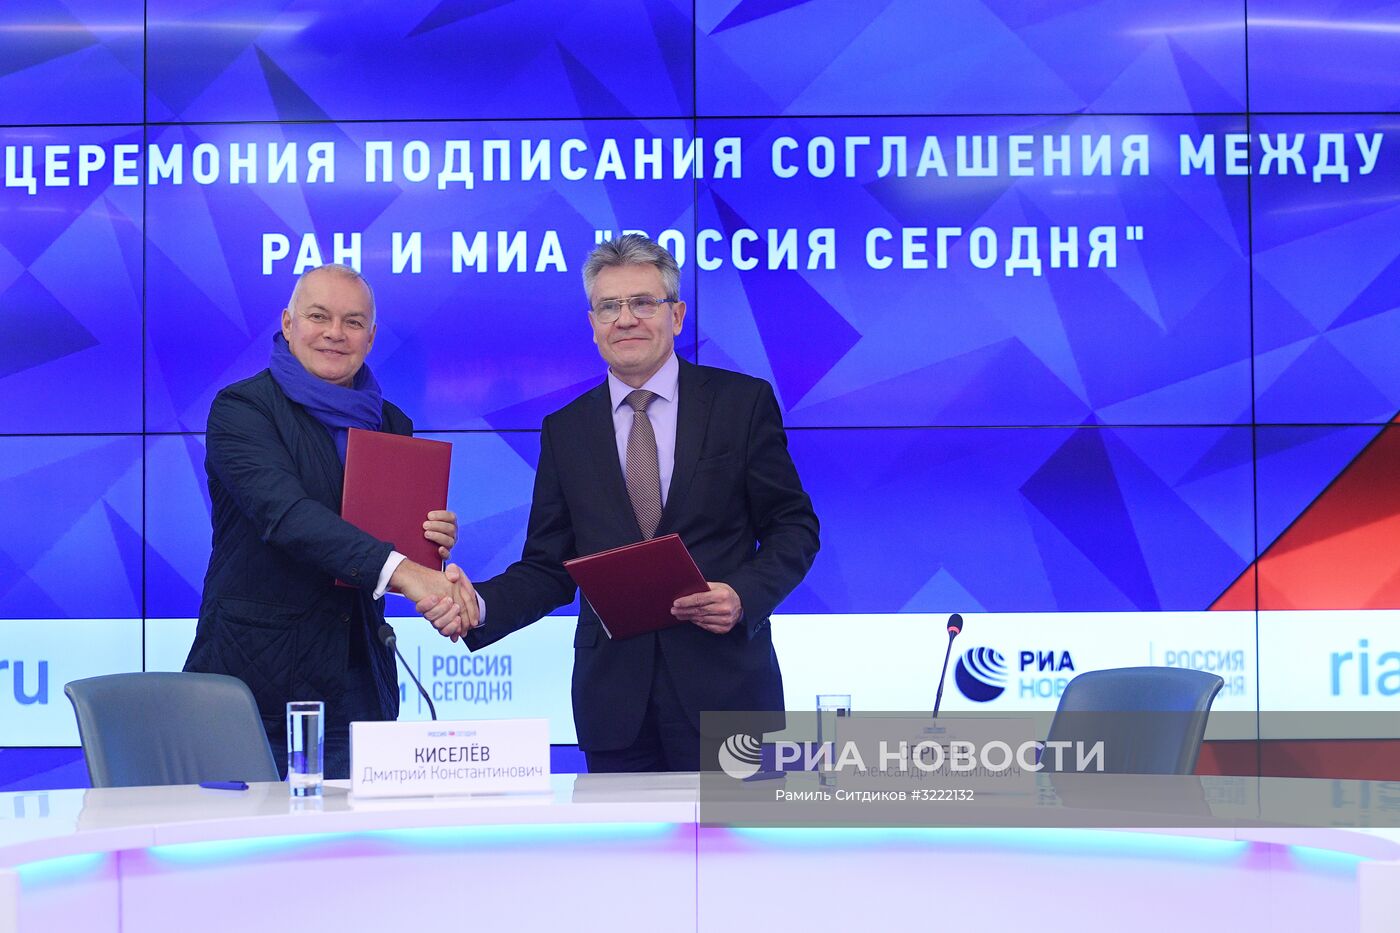 Церемония подписания соглашения между МИА "Россия сегодня" и РАН